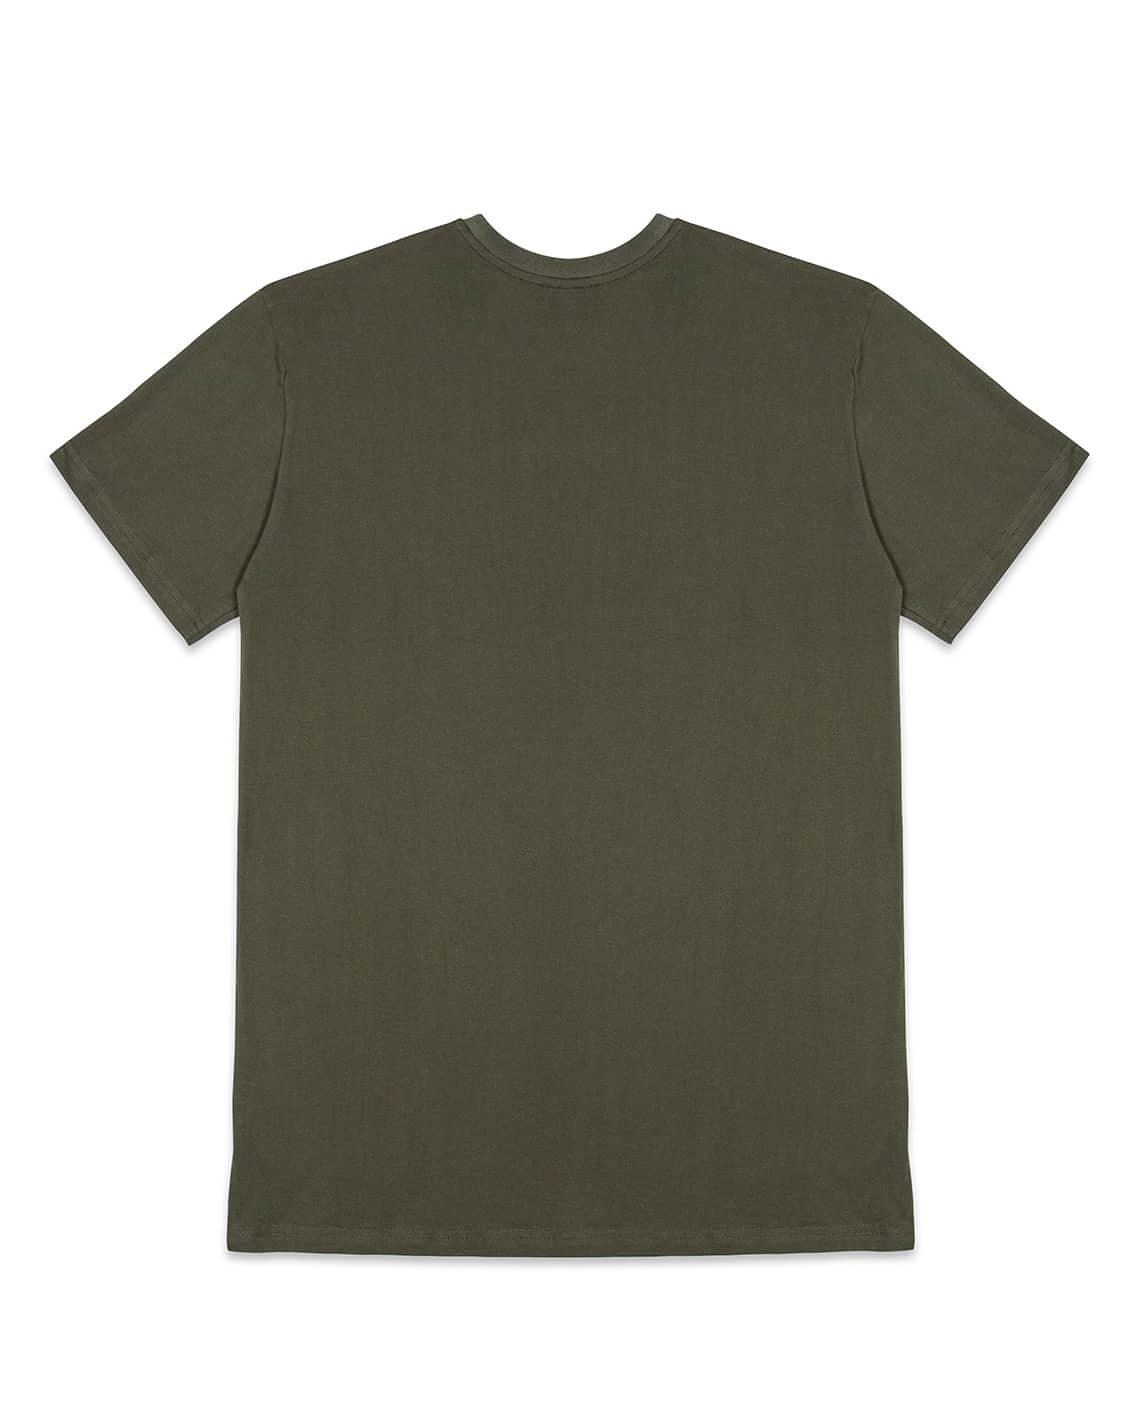 EST.11 Sage T-Shirt XL / Sage